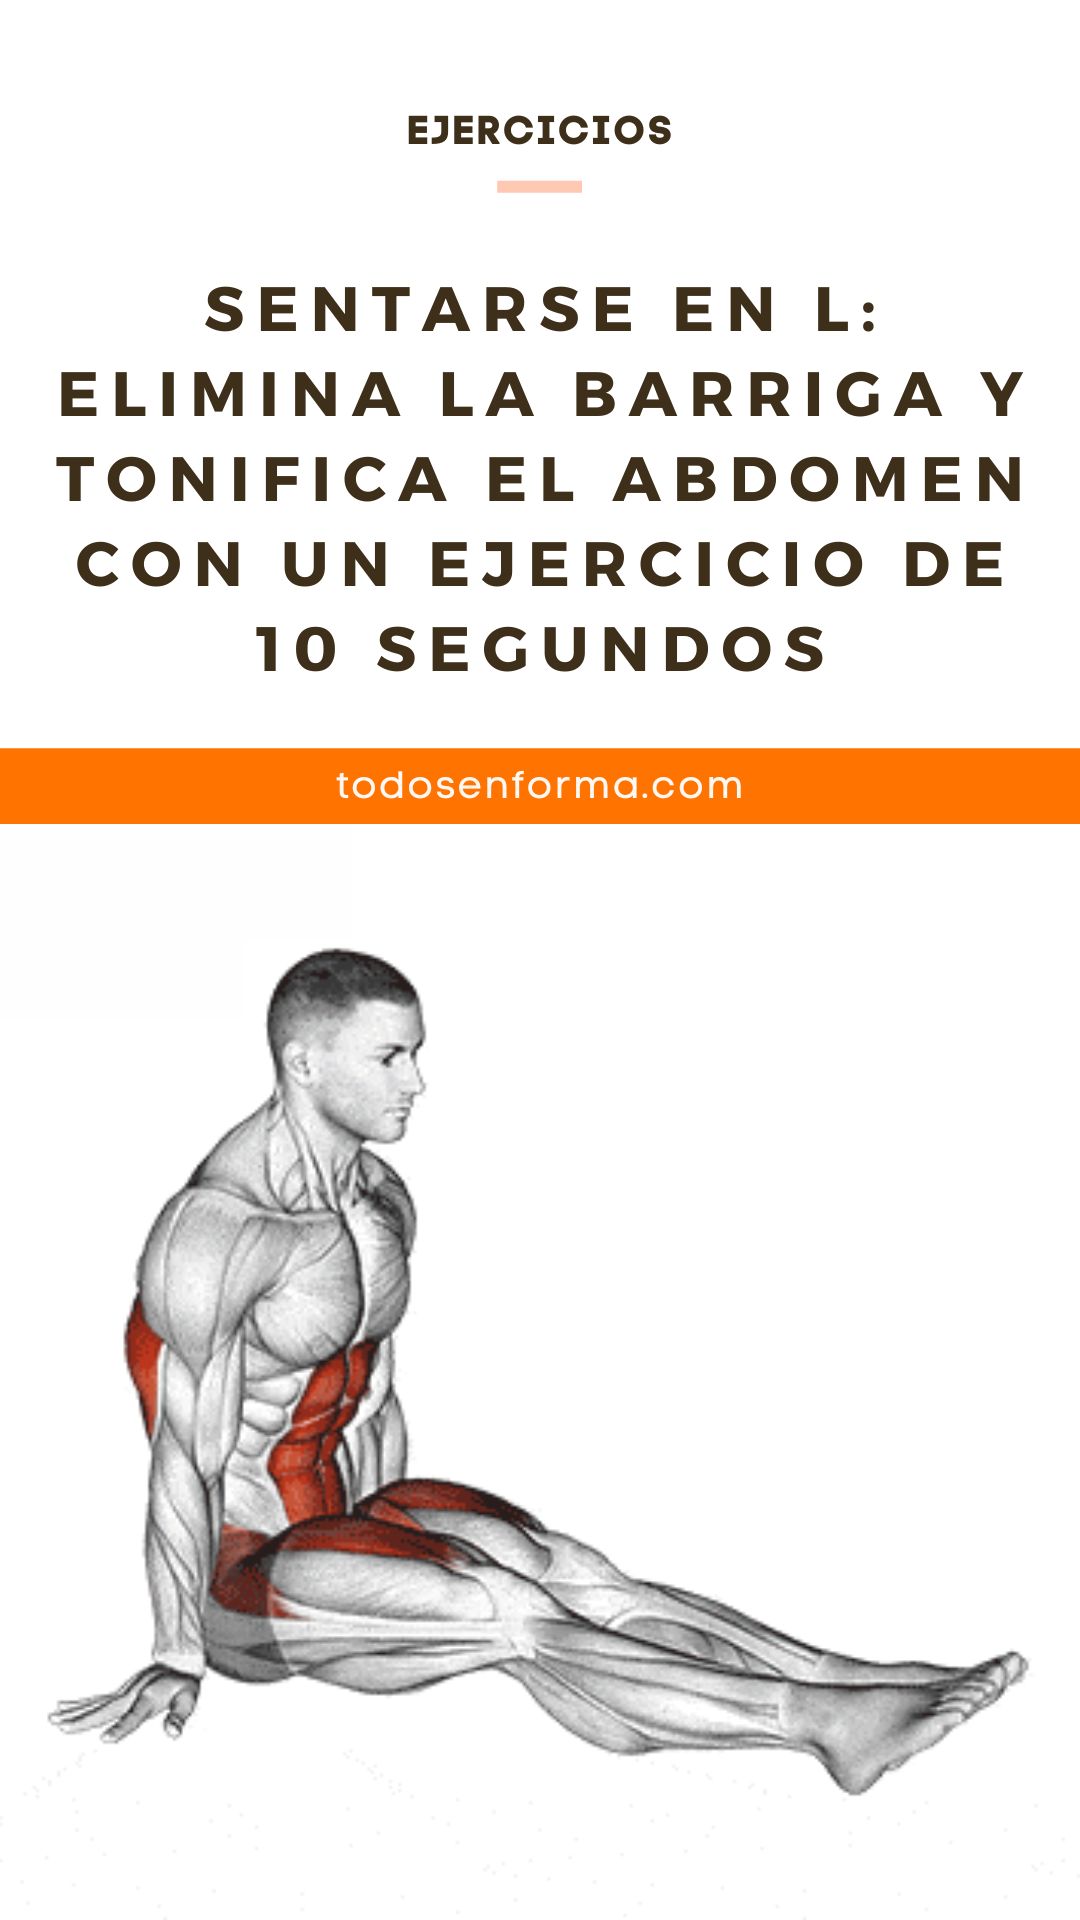 Sentarse en L: Elimina la barriga y tonifica el abdomen con un ejercicio de 10 segundos